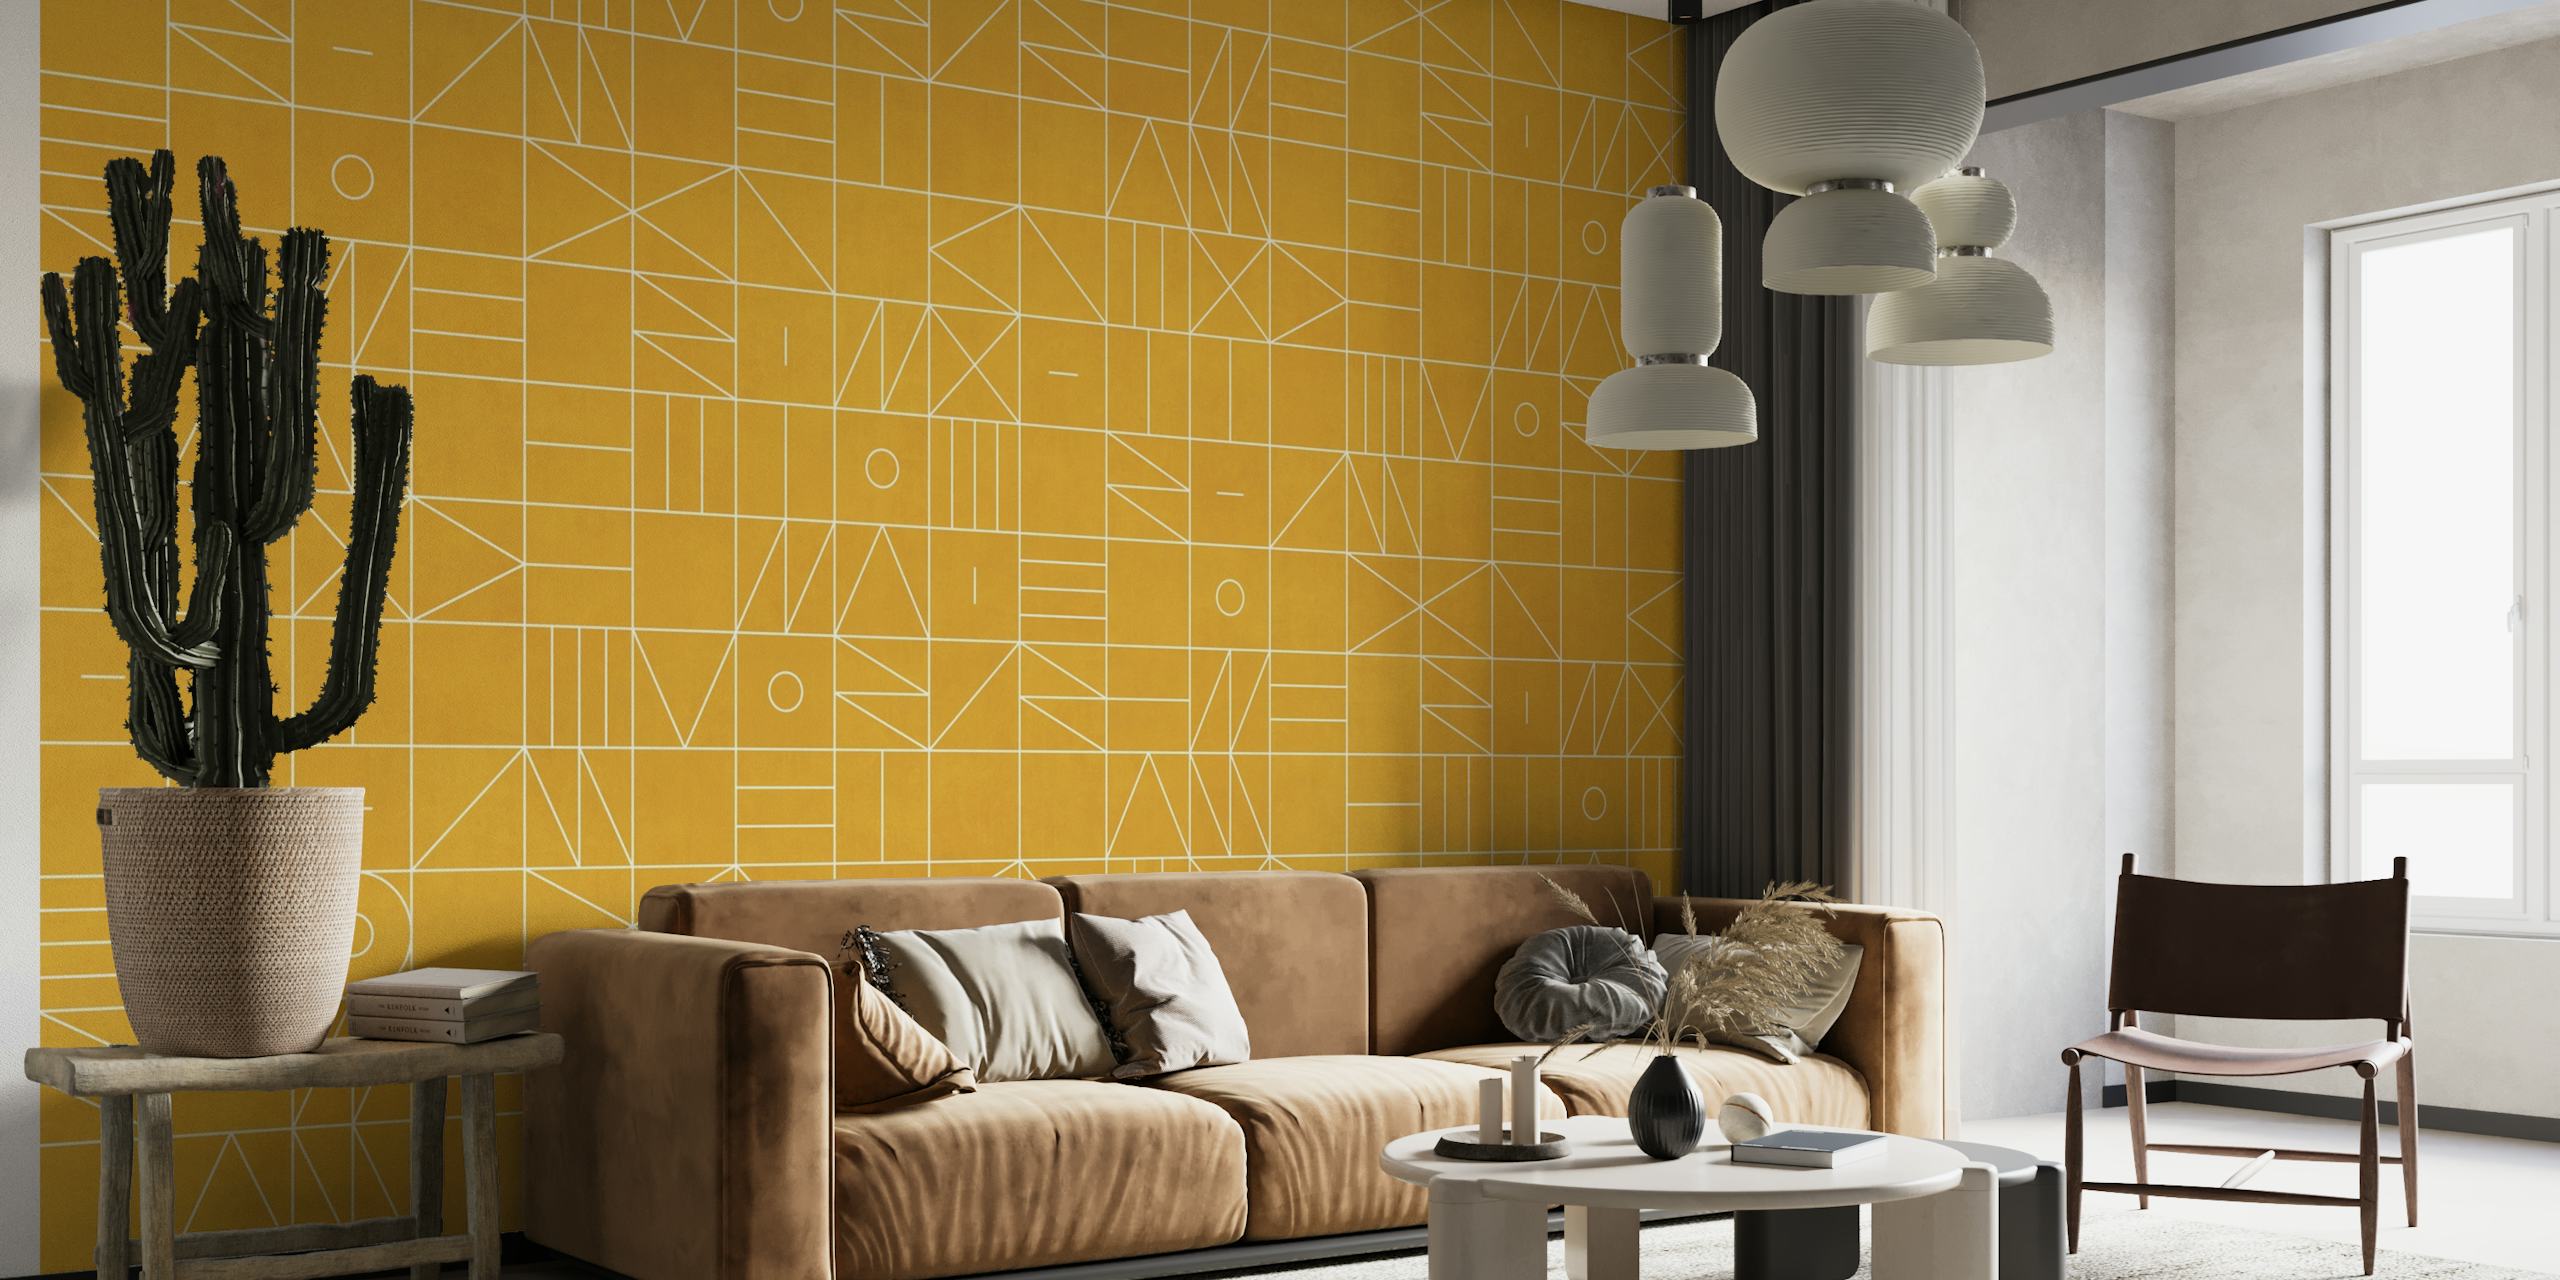 Fotomural vinílico de parede com padrão geométrico amarelo mostarda e desenhos lineares brancos